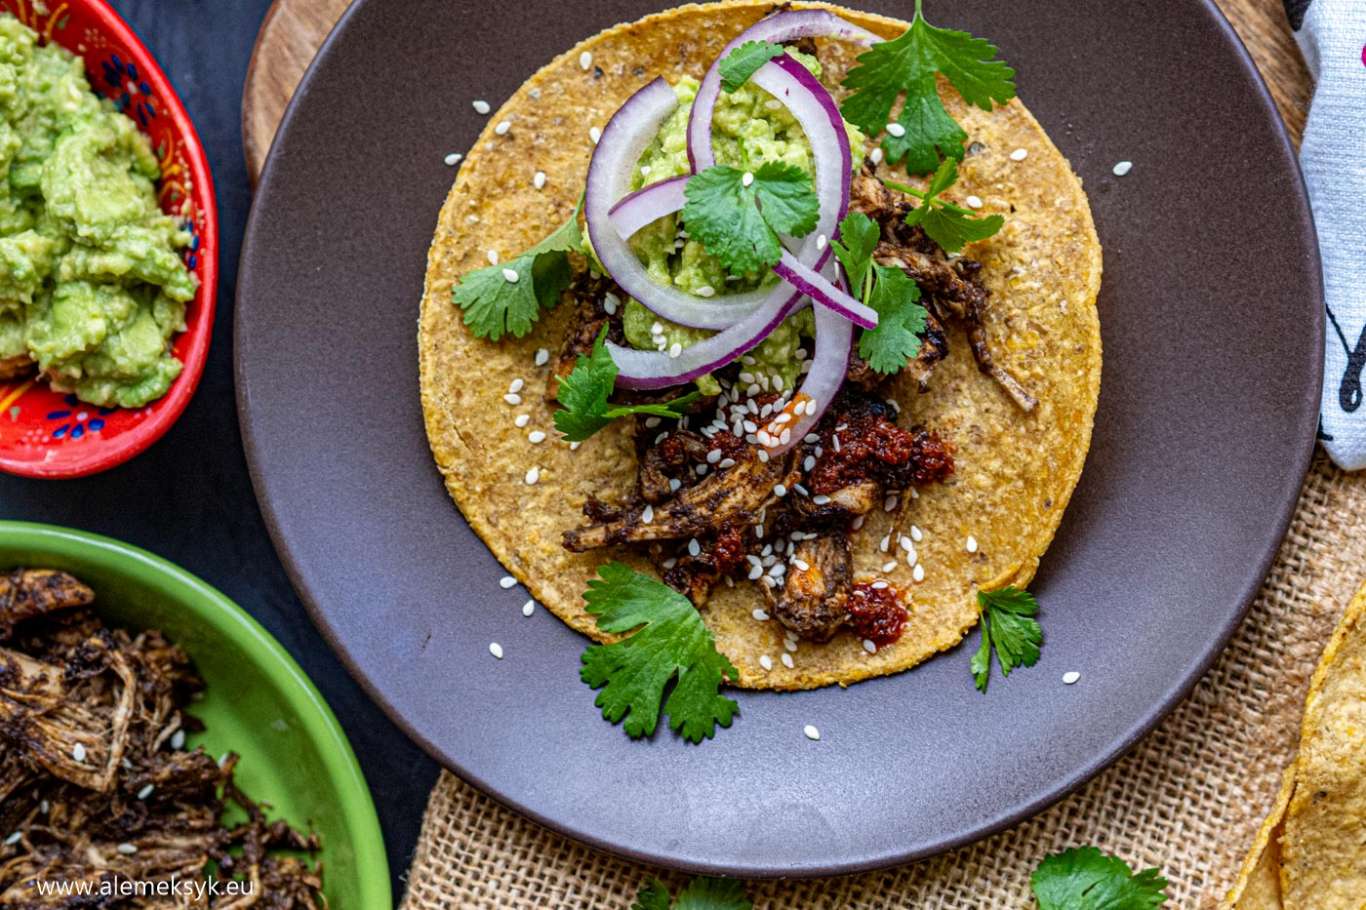 Tacos z kurczakiem w sosie mole poblano - prosto i przepysznie